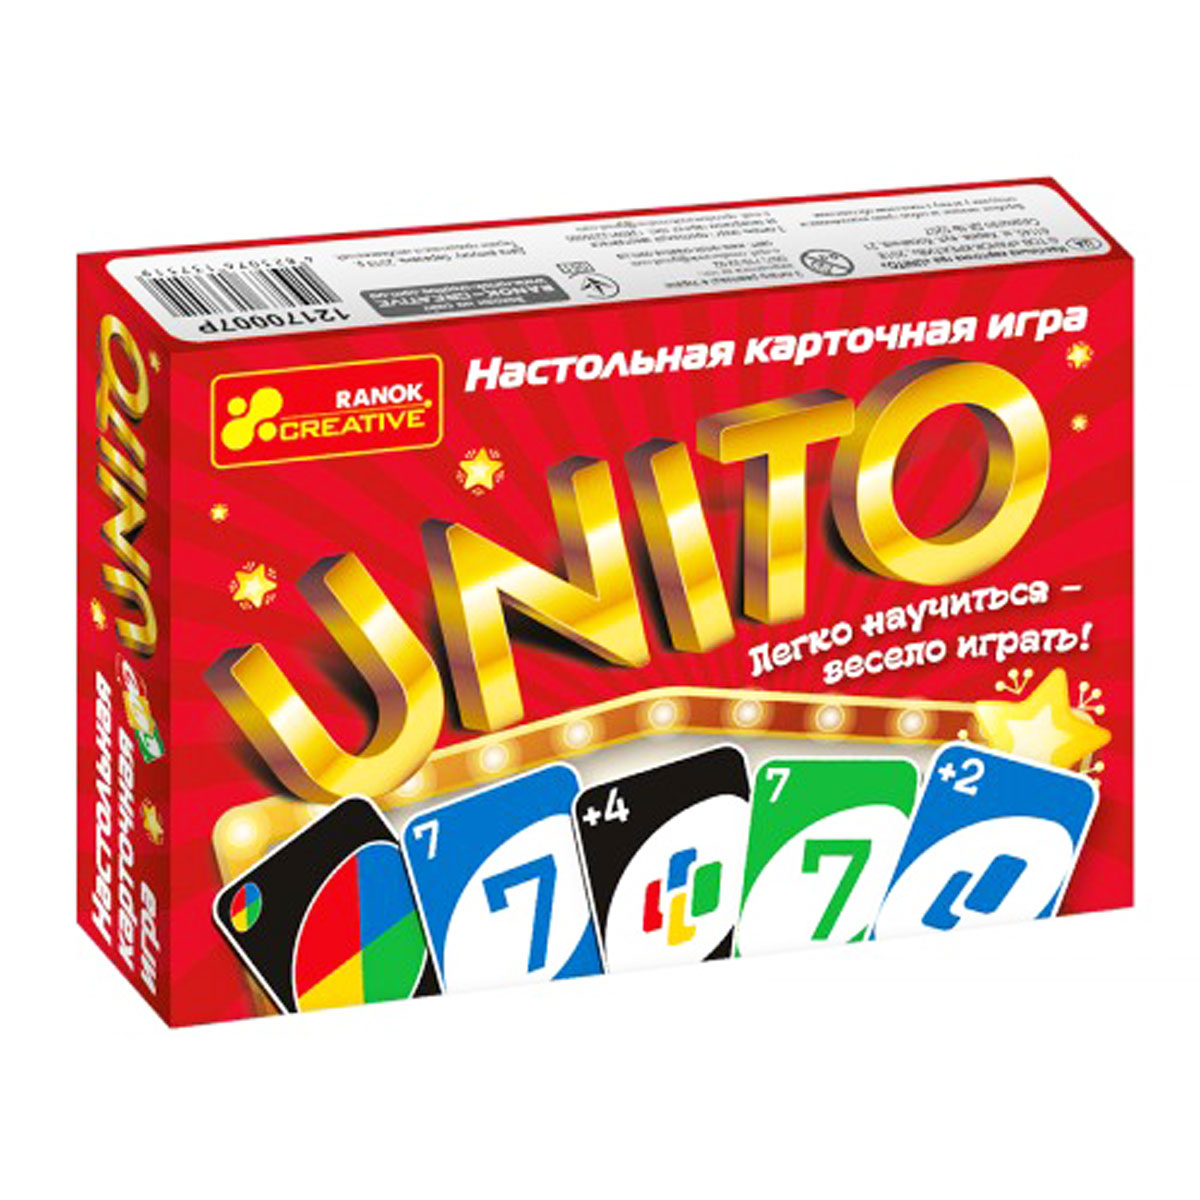 Игра настольная развлекательная 'UNITO' для взрослых